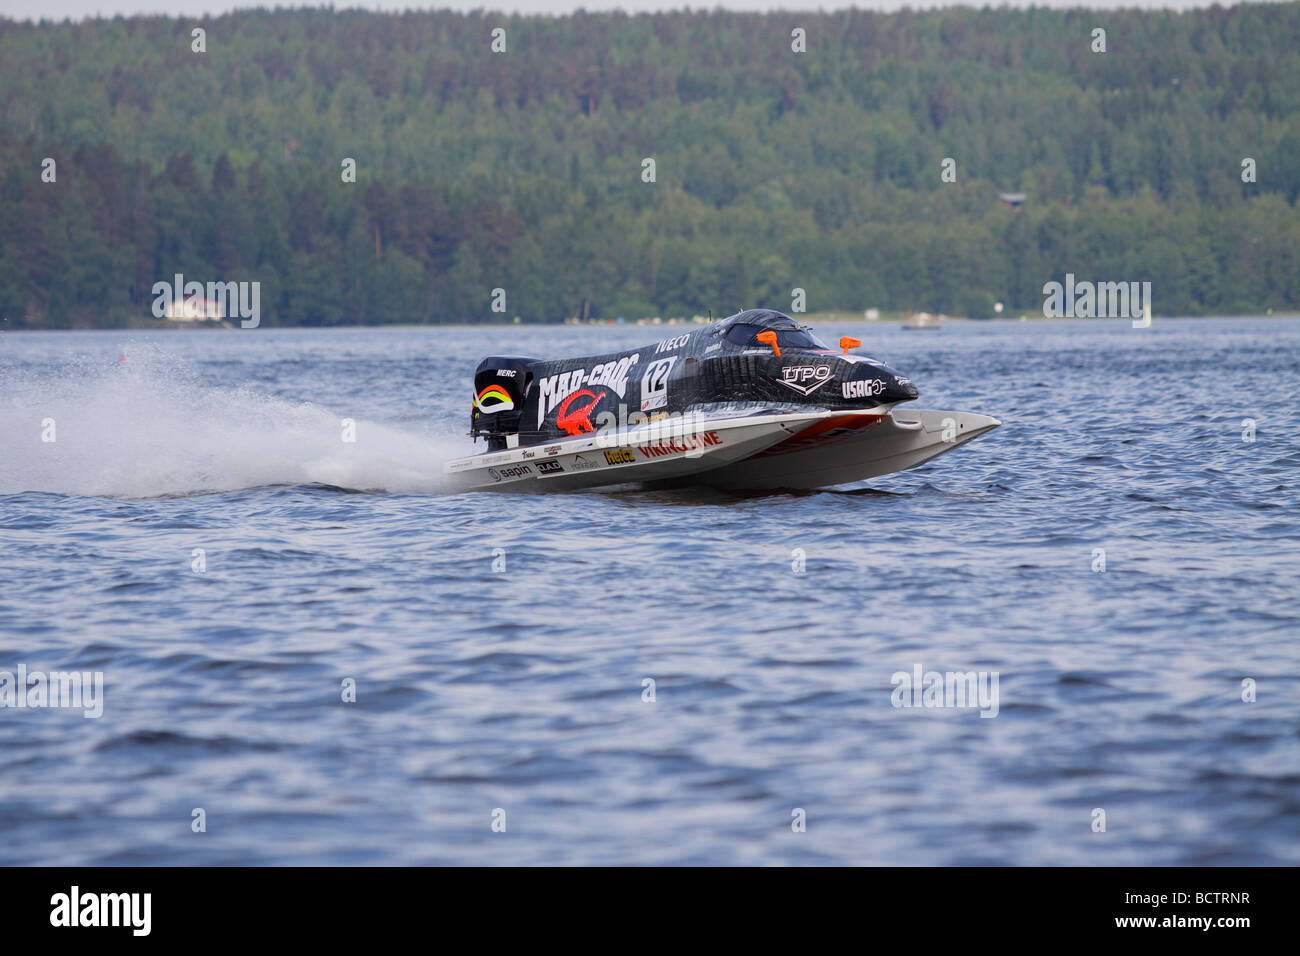 Da F1 Powerboat nel Campionato del Mondo a Lahti Finlandia 12-13 giugno 2009. Autista Sami Selio Foto Stock